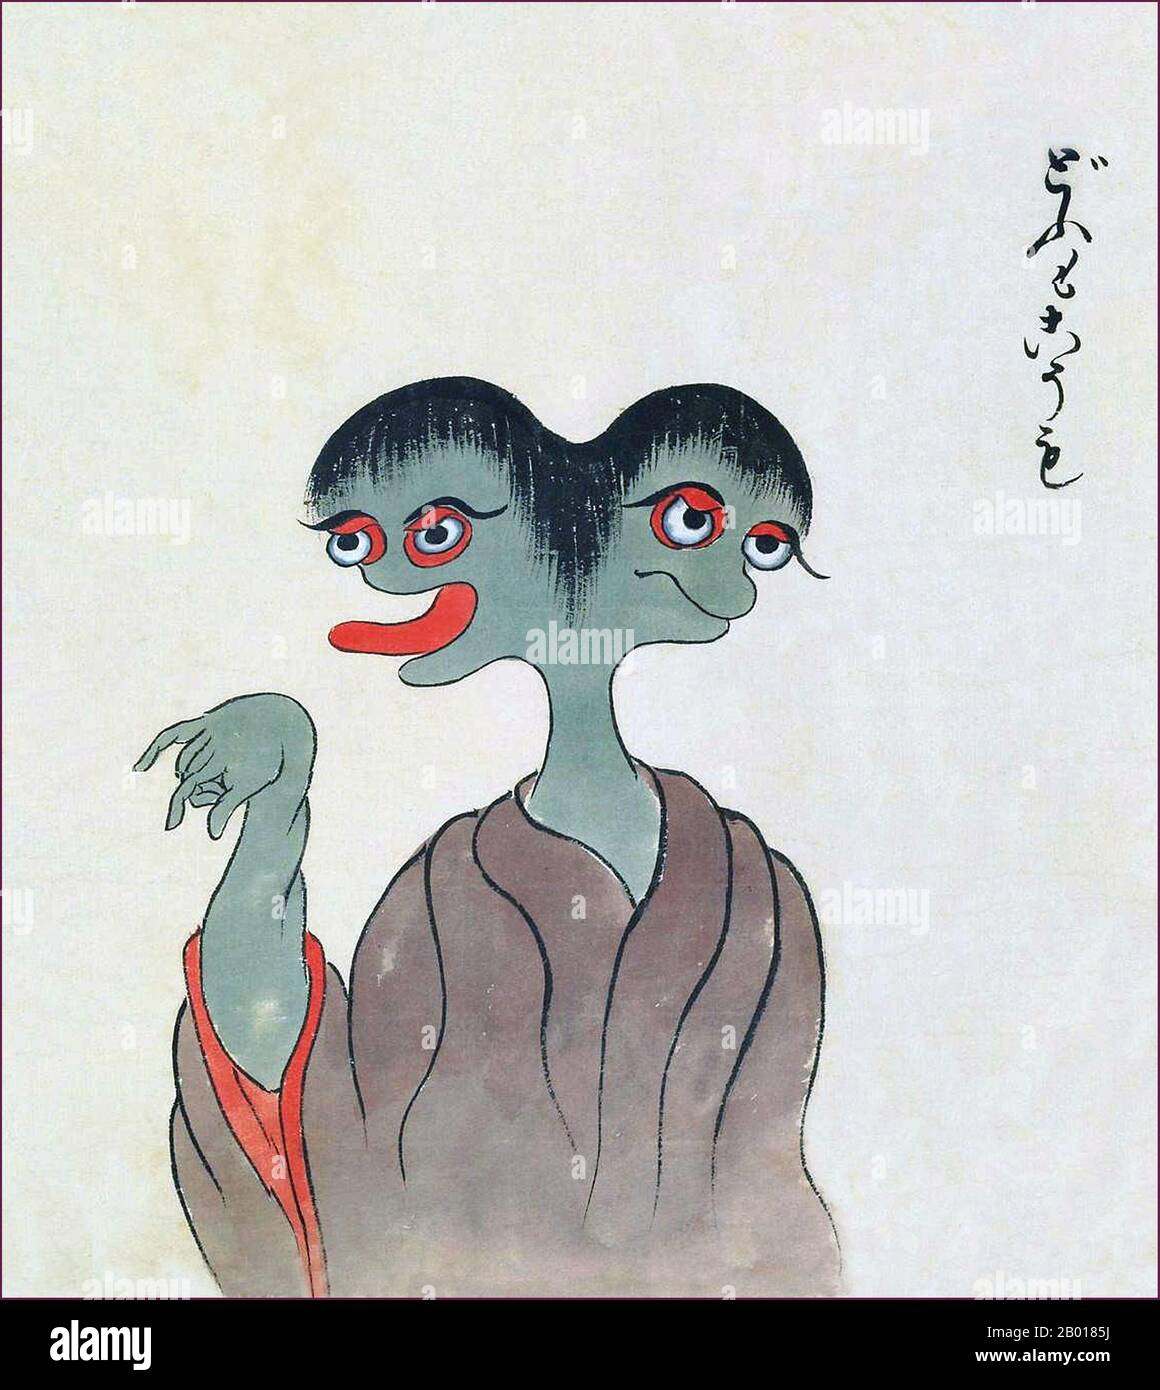 Japón: El Dōmo-kōmo es una criatura de dos cabezas con piel gris. Del bakemono Zukushi Monster Scroll, Edo período (1603-1868), 19th-18th siglo. El rollo de mano de bakemono Zukushi, pintado en el período Edo (siglo 18th-19th) por un artista desconocido, representa 24 monstruos tradicionales que tradicionalmente acechan a la gente y localidades en Japón. Foto de stock